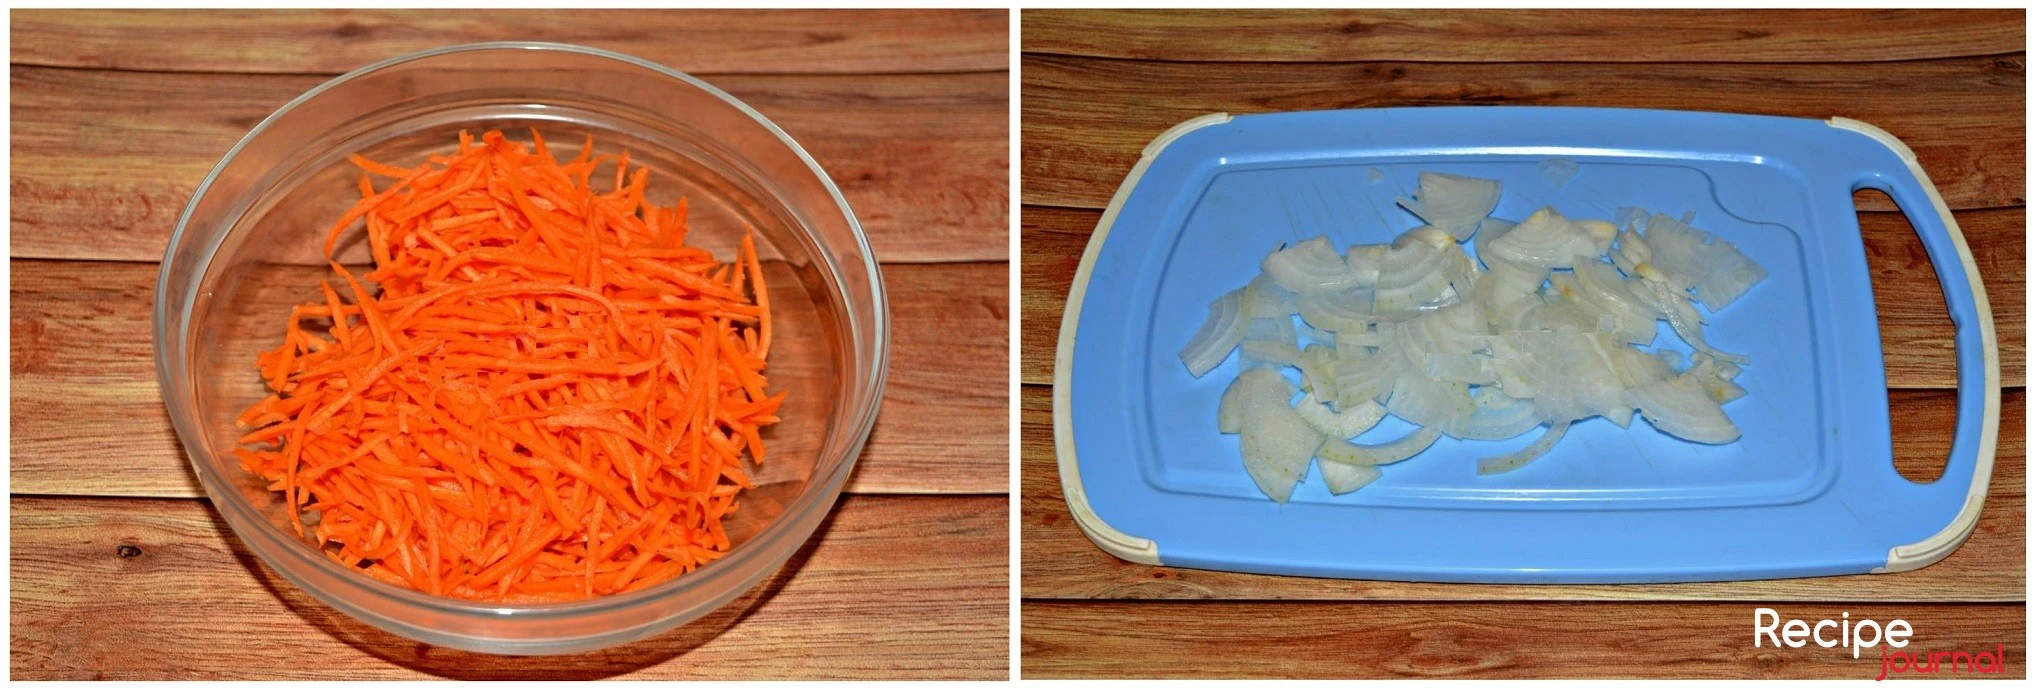 Готовим овощи. Очищенную морковь нарезаем тонкой соломкой, немного солим и хорошенько мнем, чтобы она пустила сок. Лук нарезаем полукольцами.